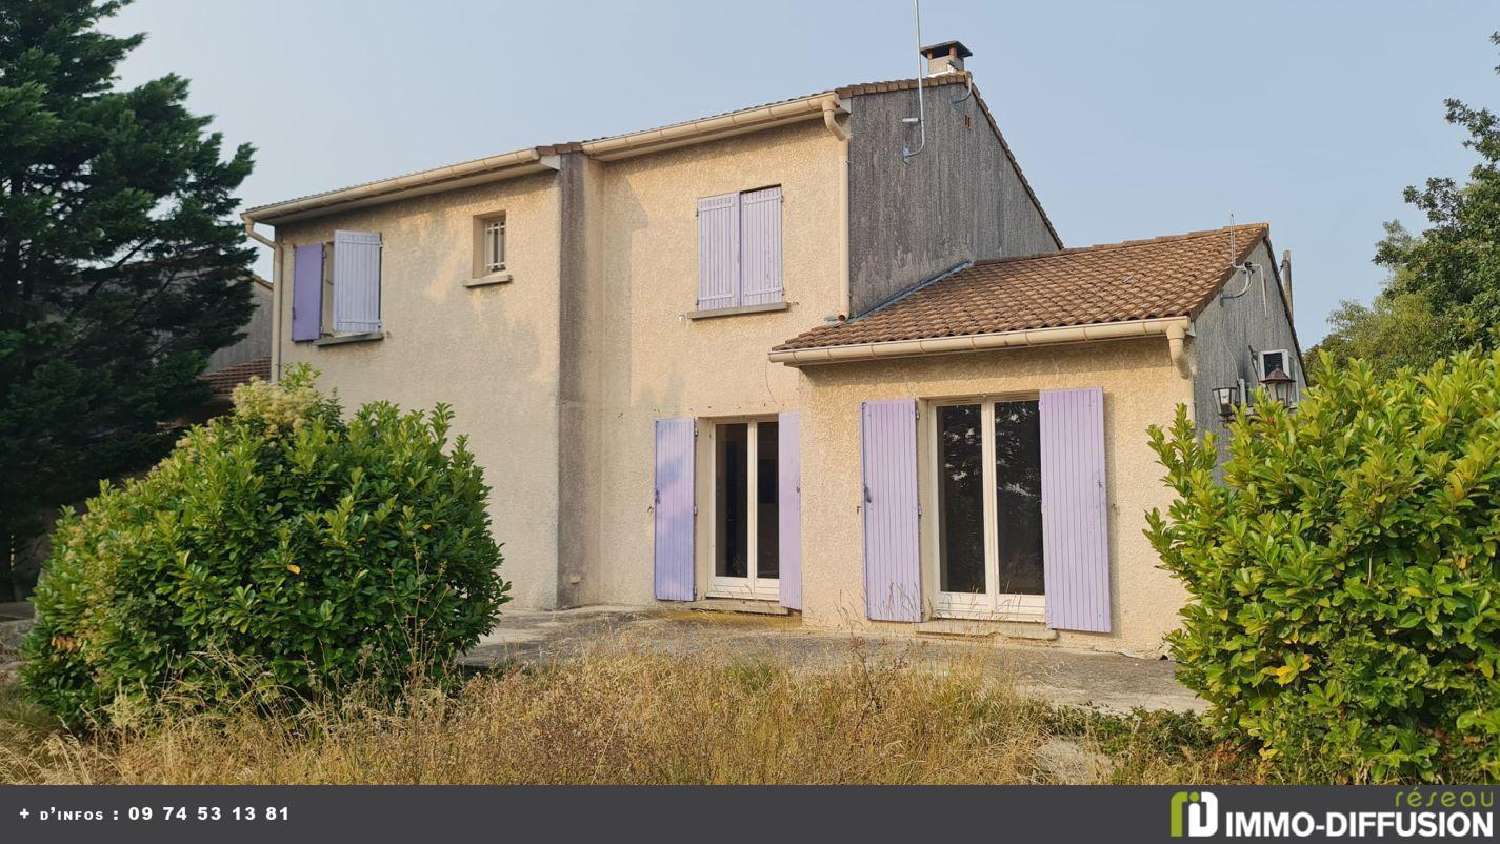  for sale house Bourg-Saint-Andéol Ardèche 1